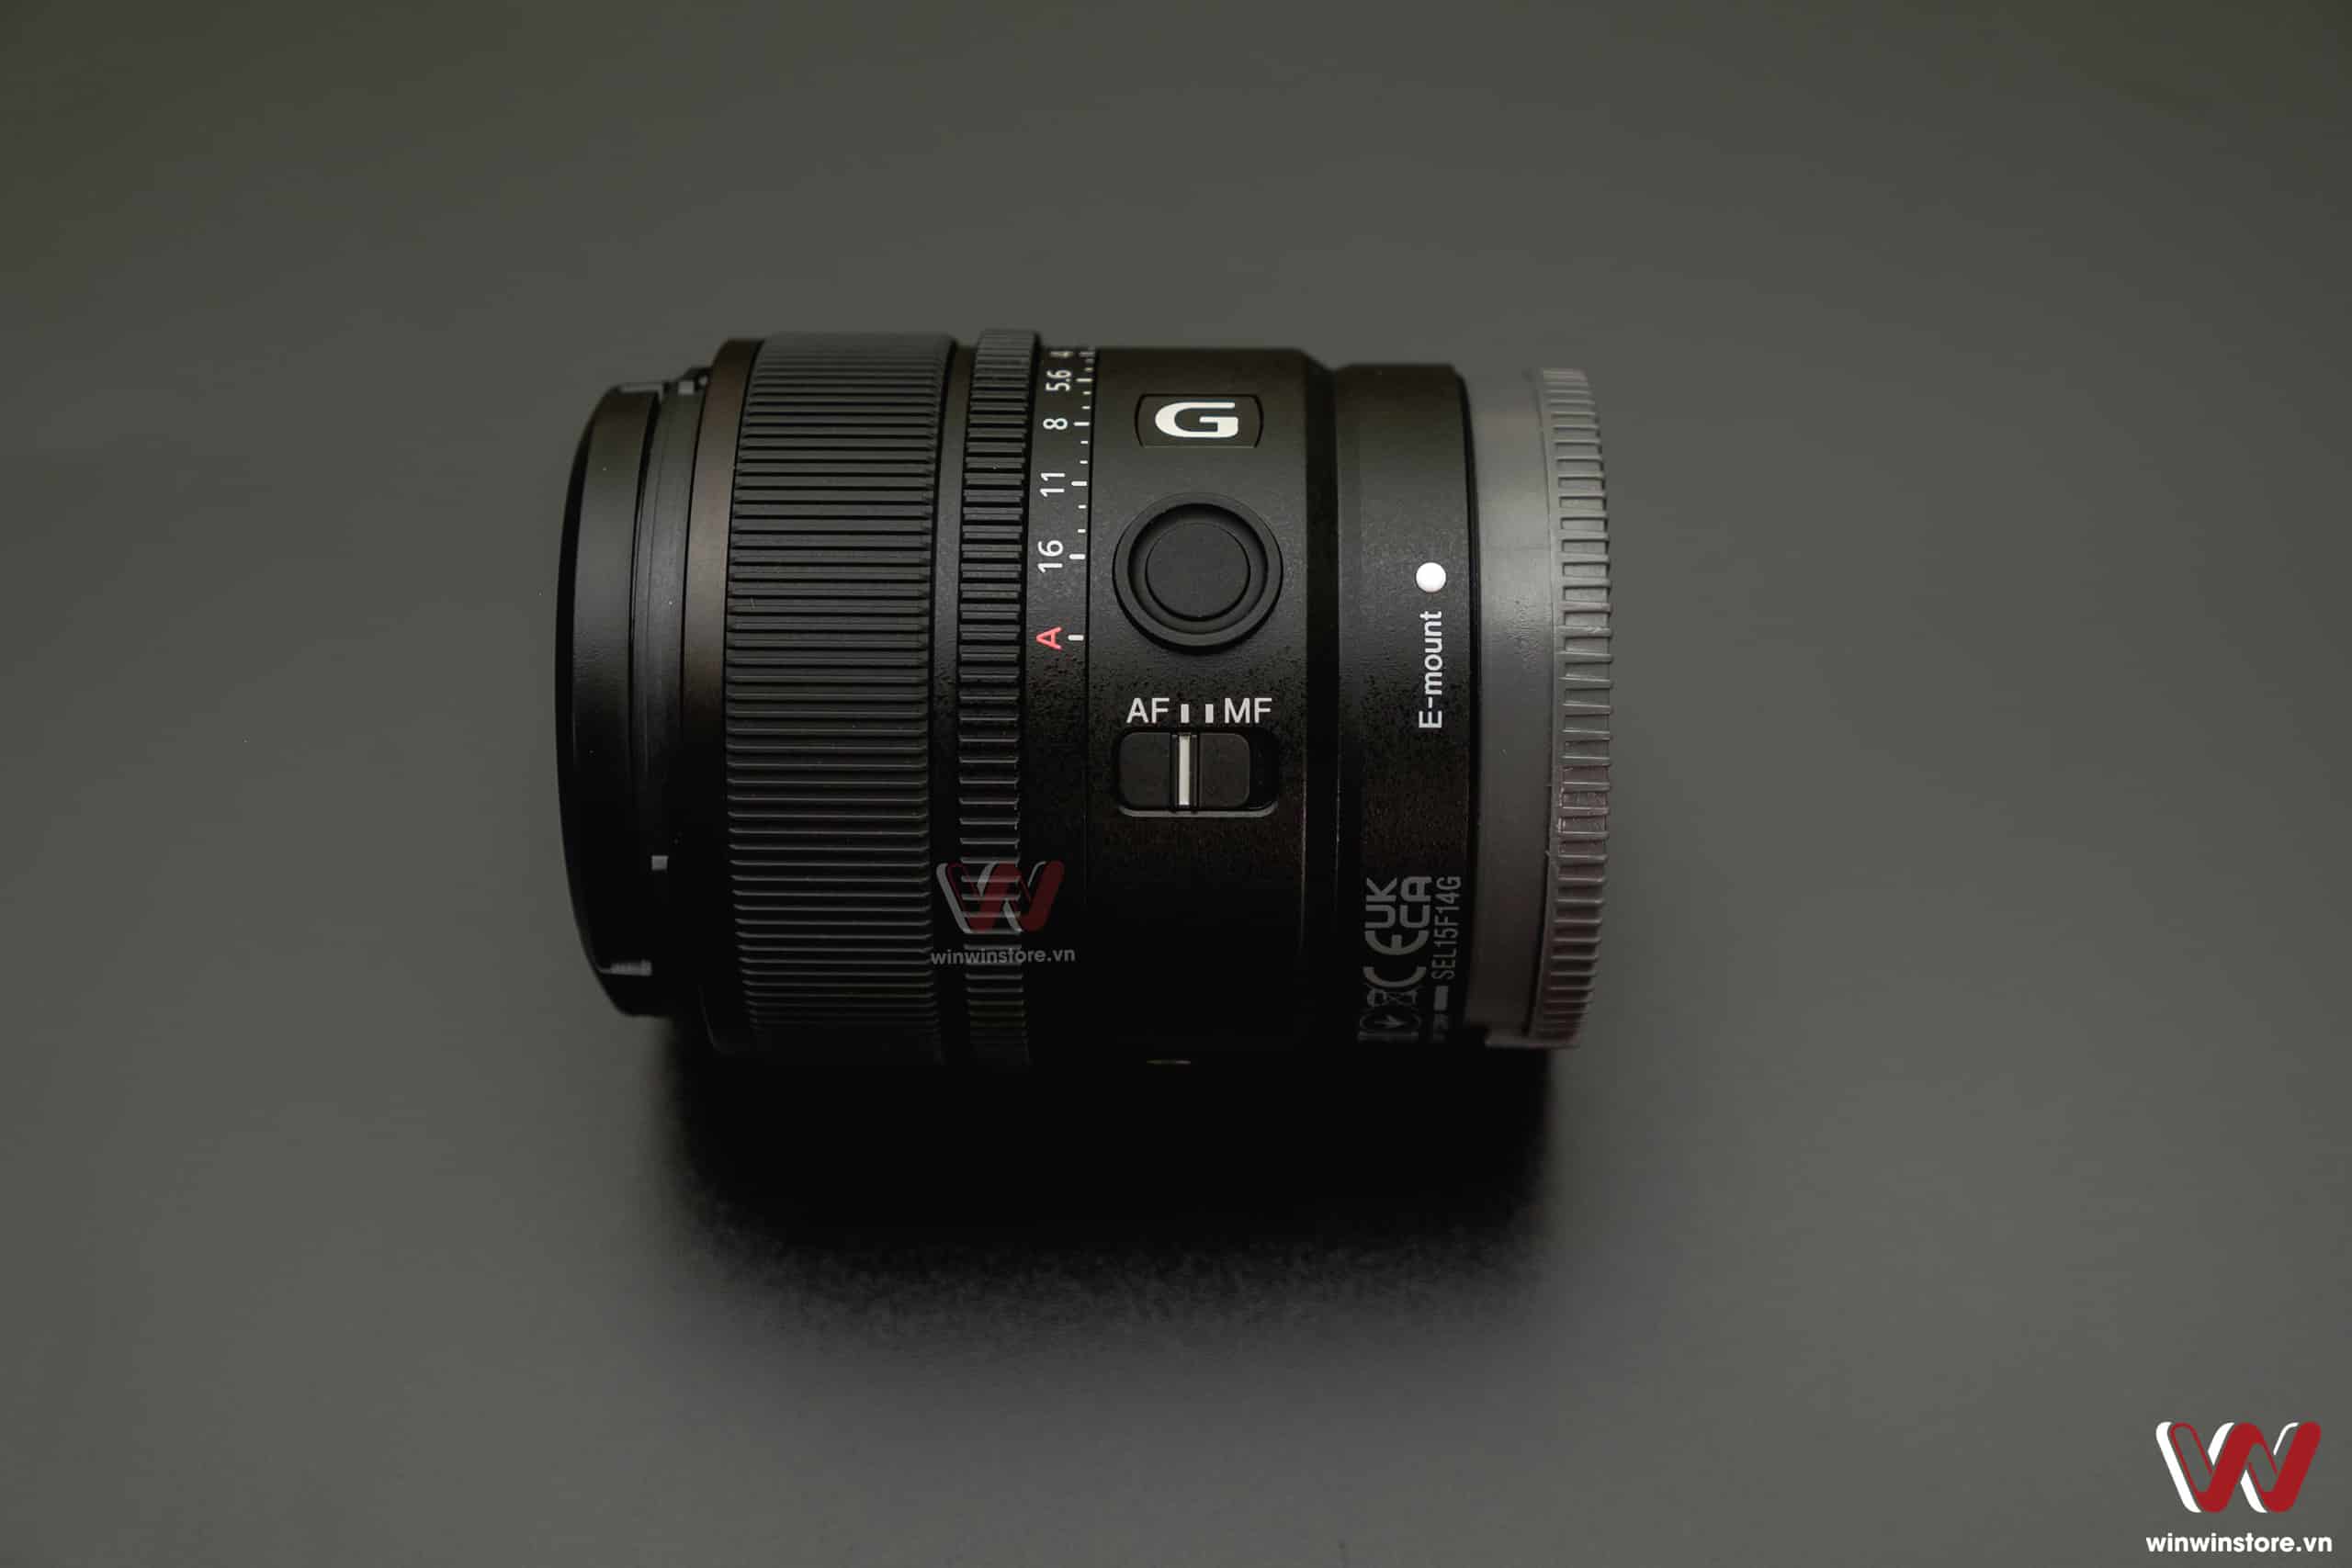 Ống kính Sony E 15mm F1.4 G